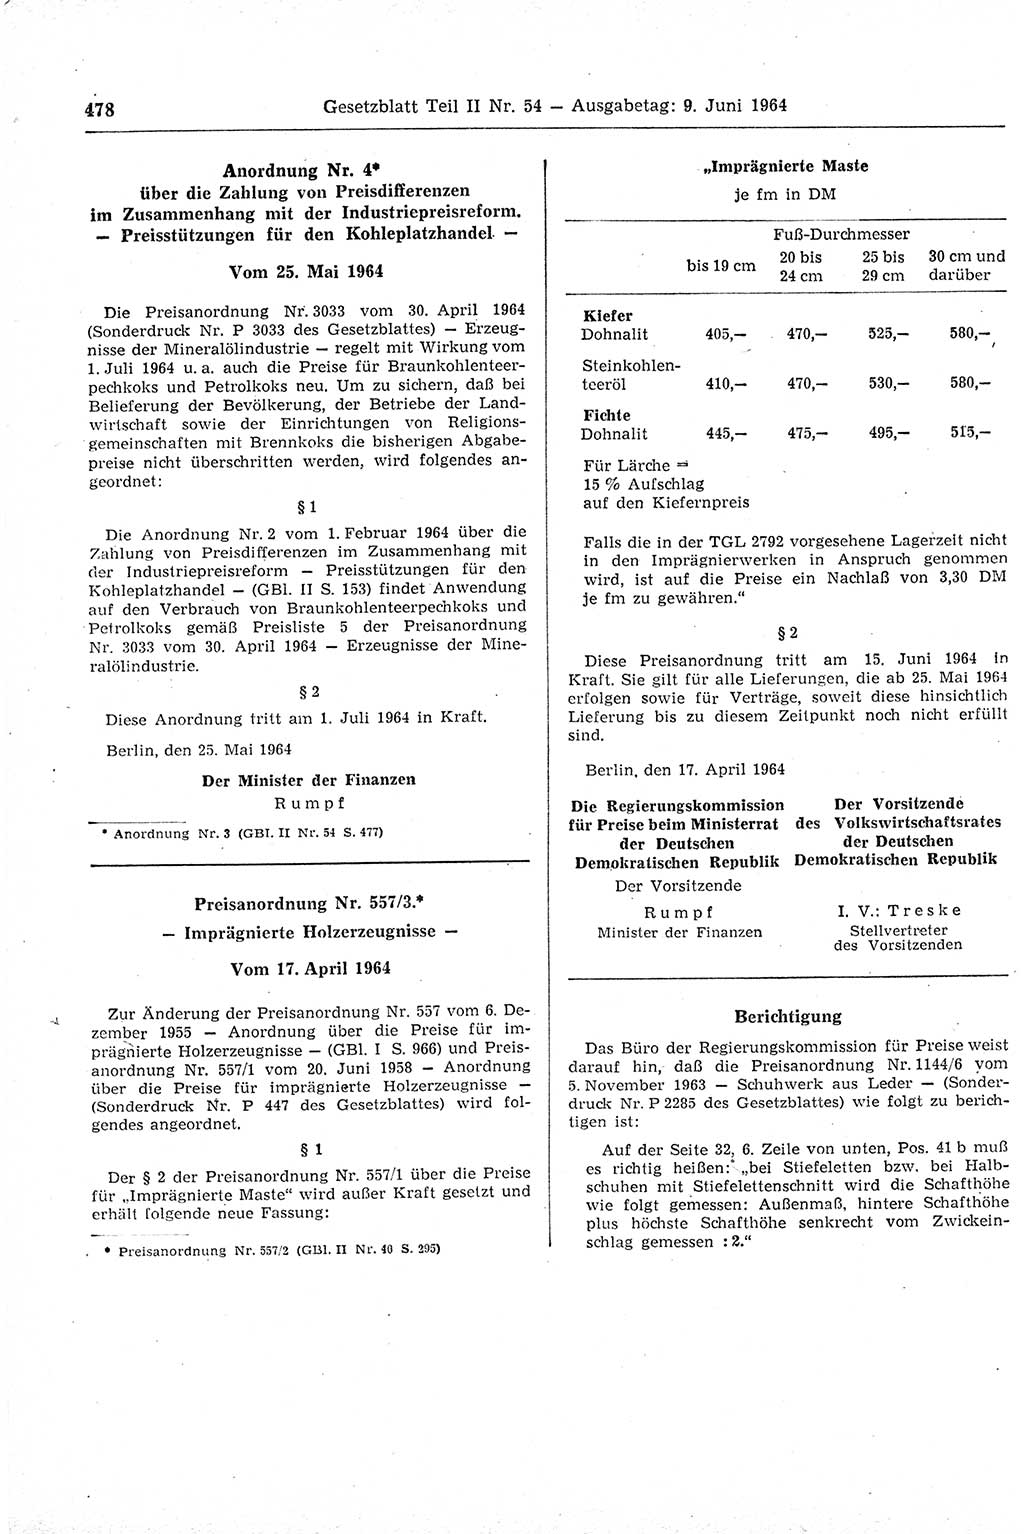 Gesetzblatt (GBl.) der Deutschen Demokratischen Republik (DDR) Teil ⅠⅠ 1964, Seite 478 (GBl. DDR ⅠⅠ 1964, S. 478)